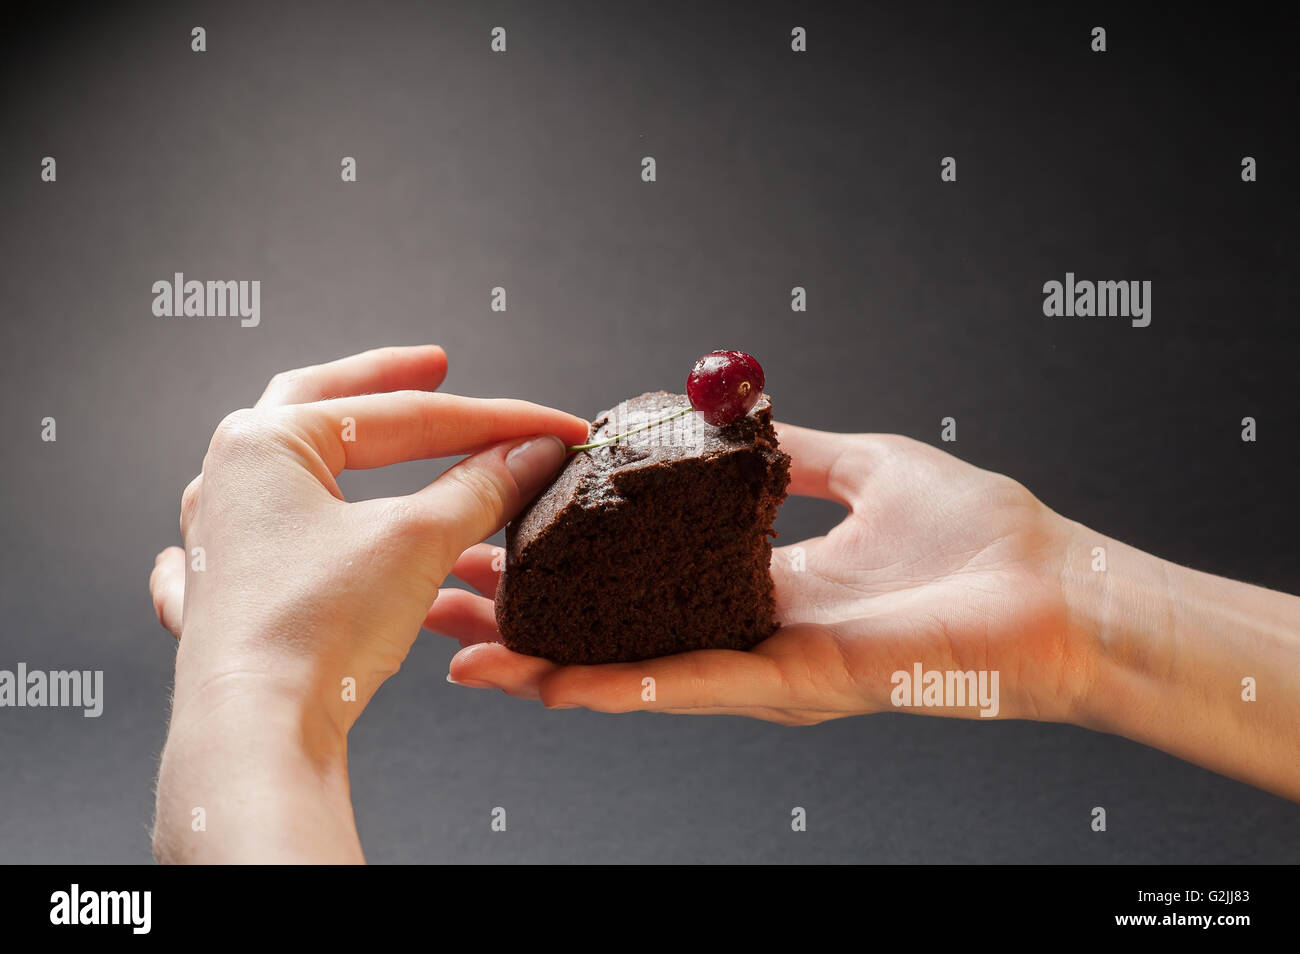 Tranche de délicieux gâteau au chocolat avec cerise sur le gâteau dans les mains d'une femme sur un fond sombre. Banque D'Images